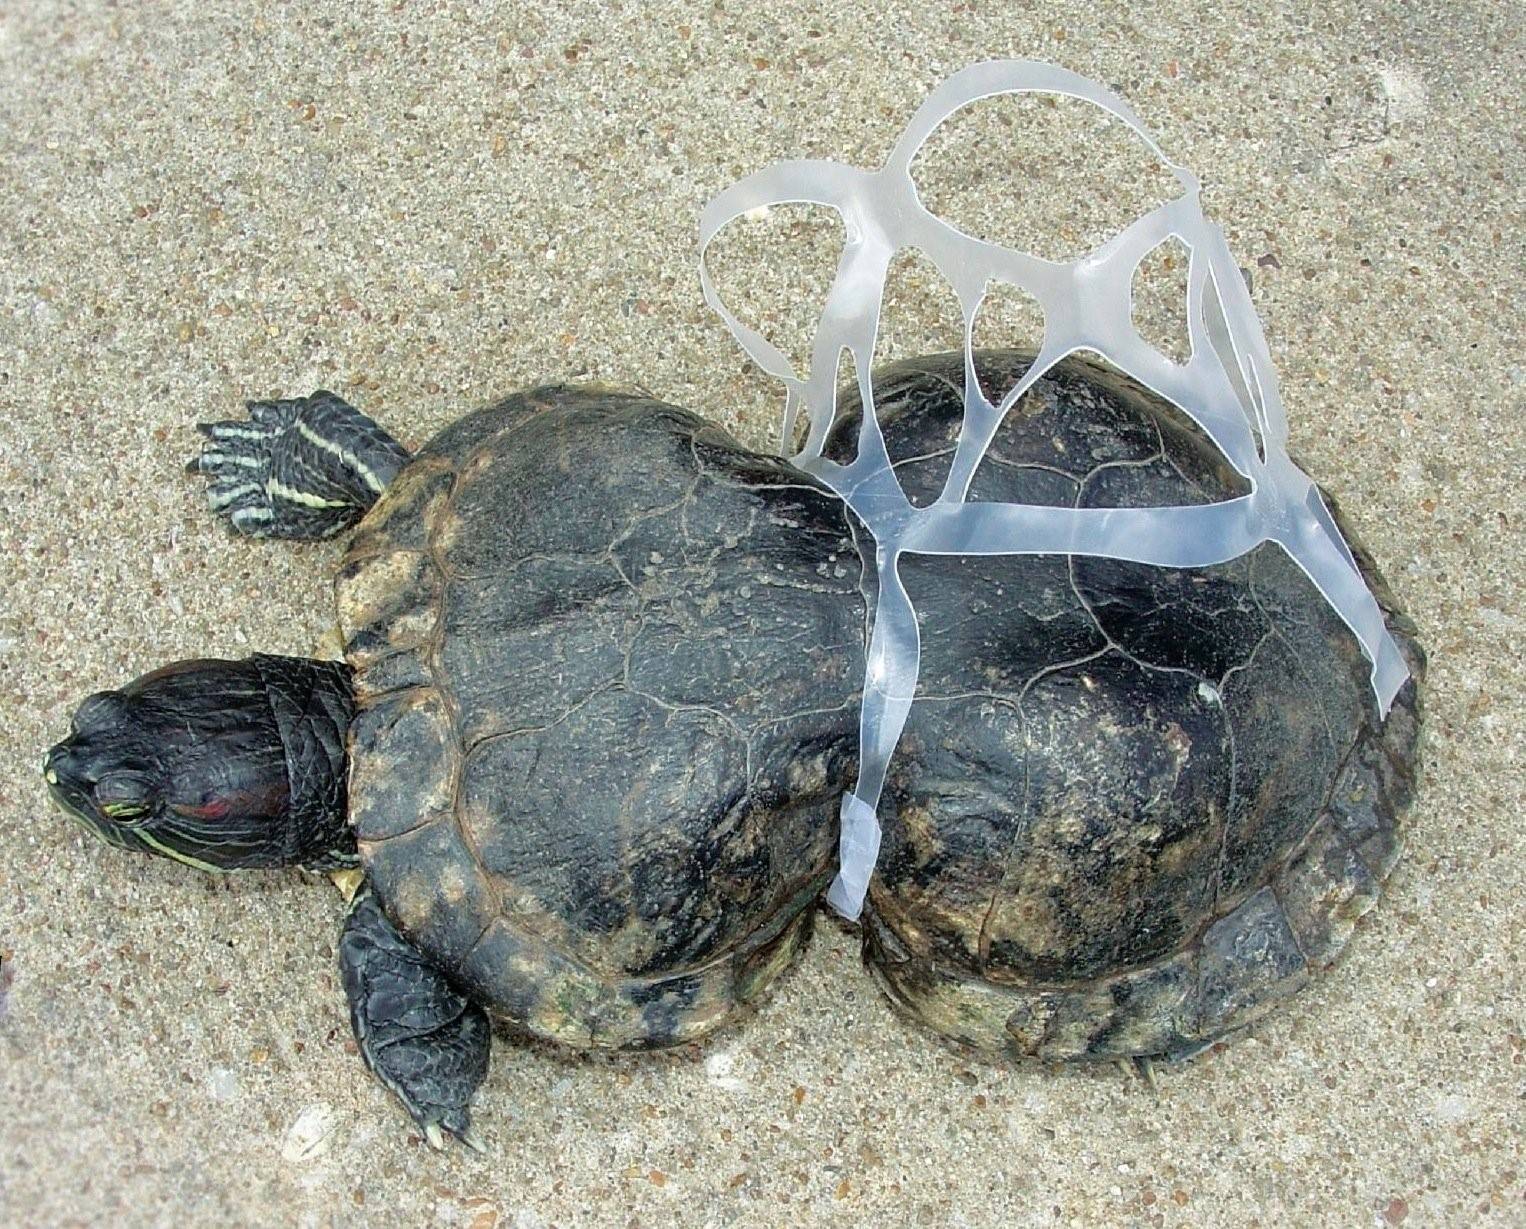 Plastic animals. Черепаха в пластике. Черепаха и пластиковый пакет. Черепаха в пакете.